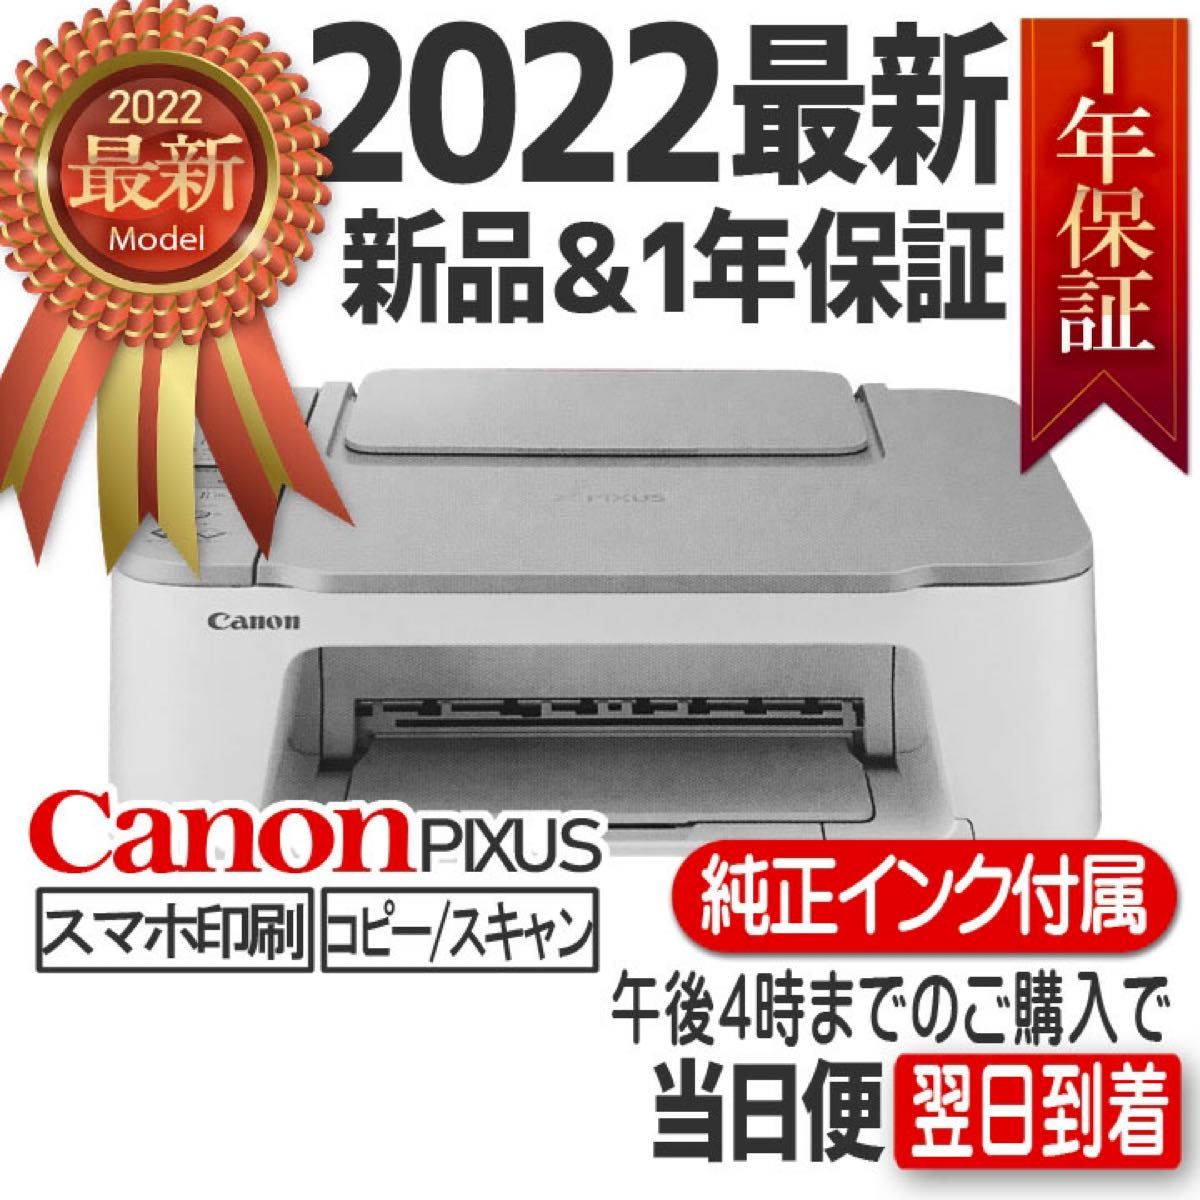 新品 CANON プリンター 印刷機コピー機 TS3530 複合機 キャノン